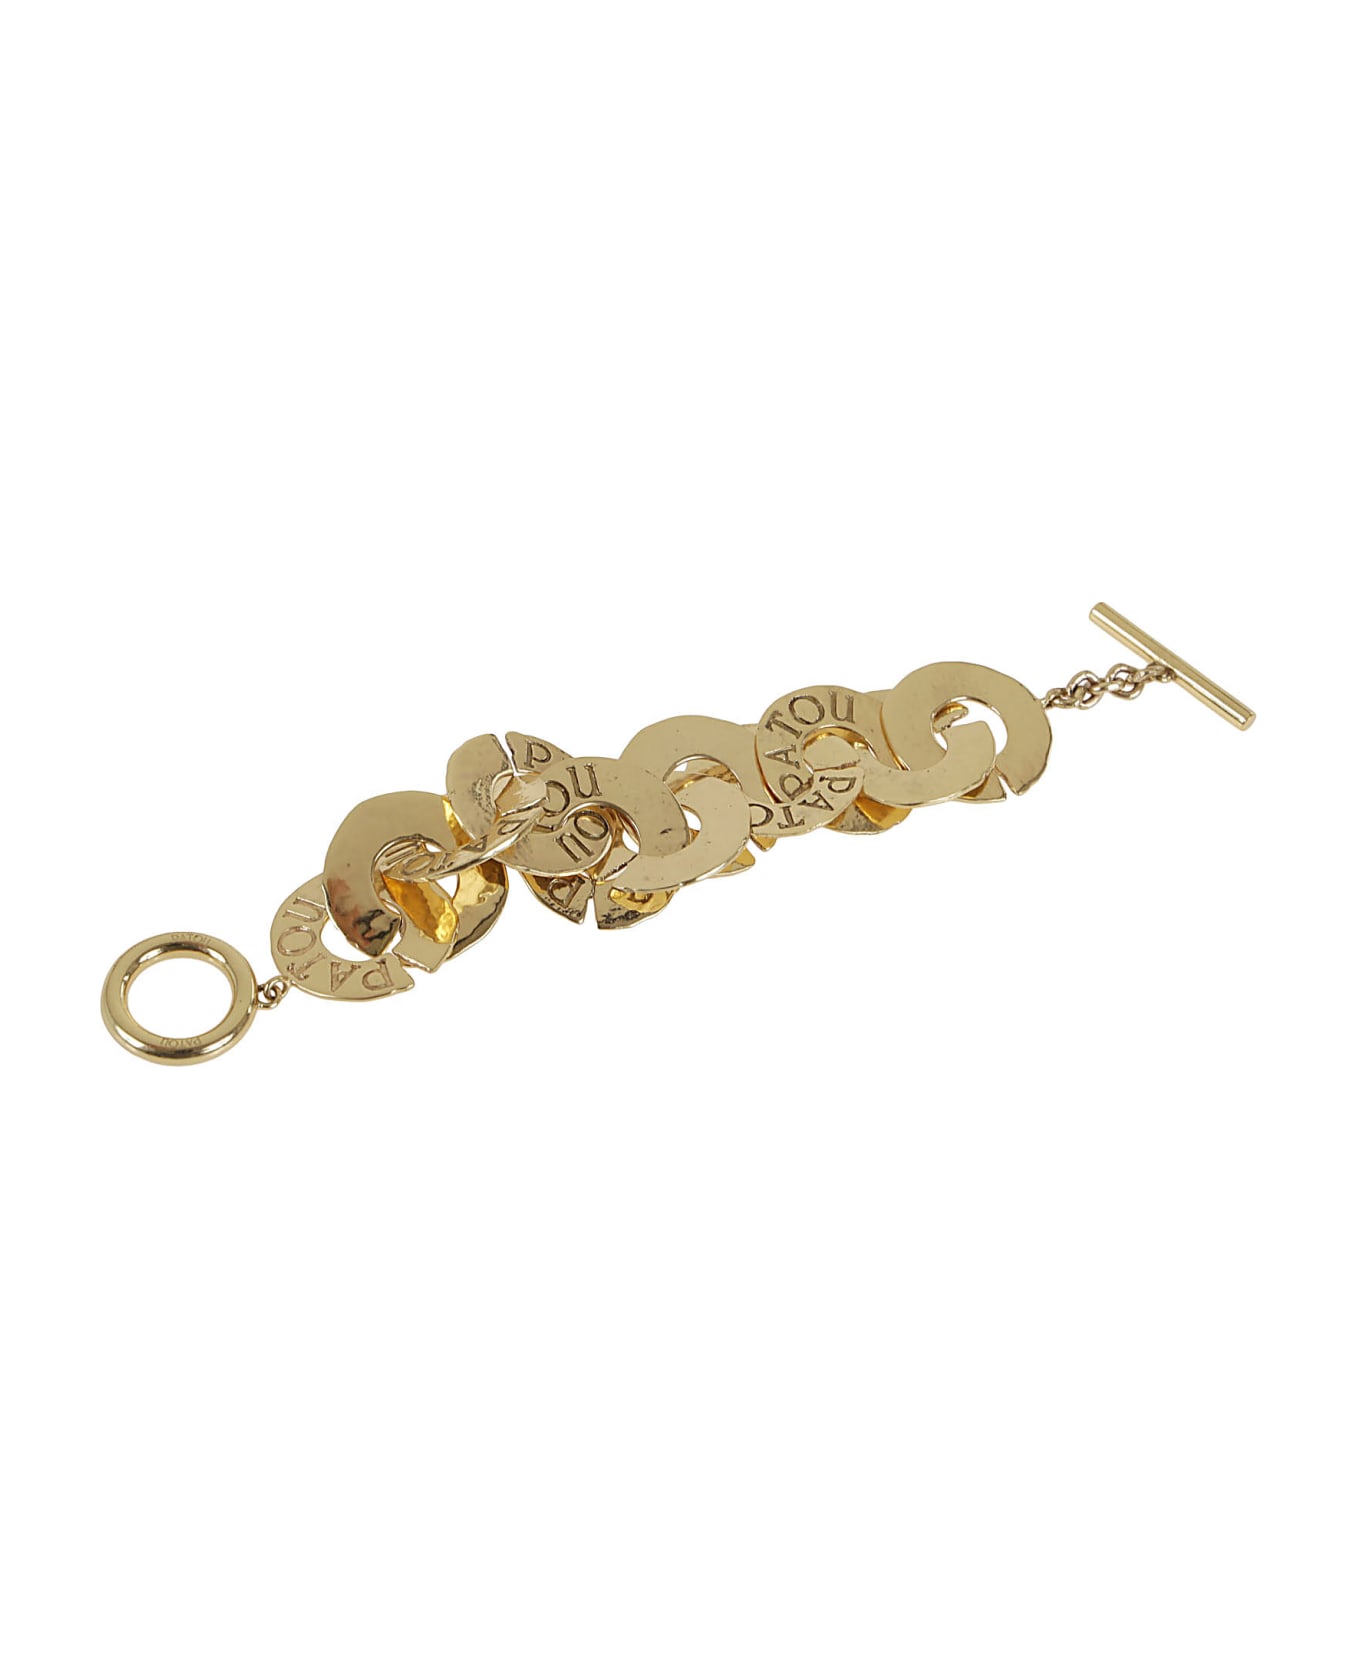 Patou Antique Coins Bracelet - G Gold